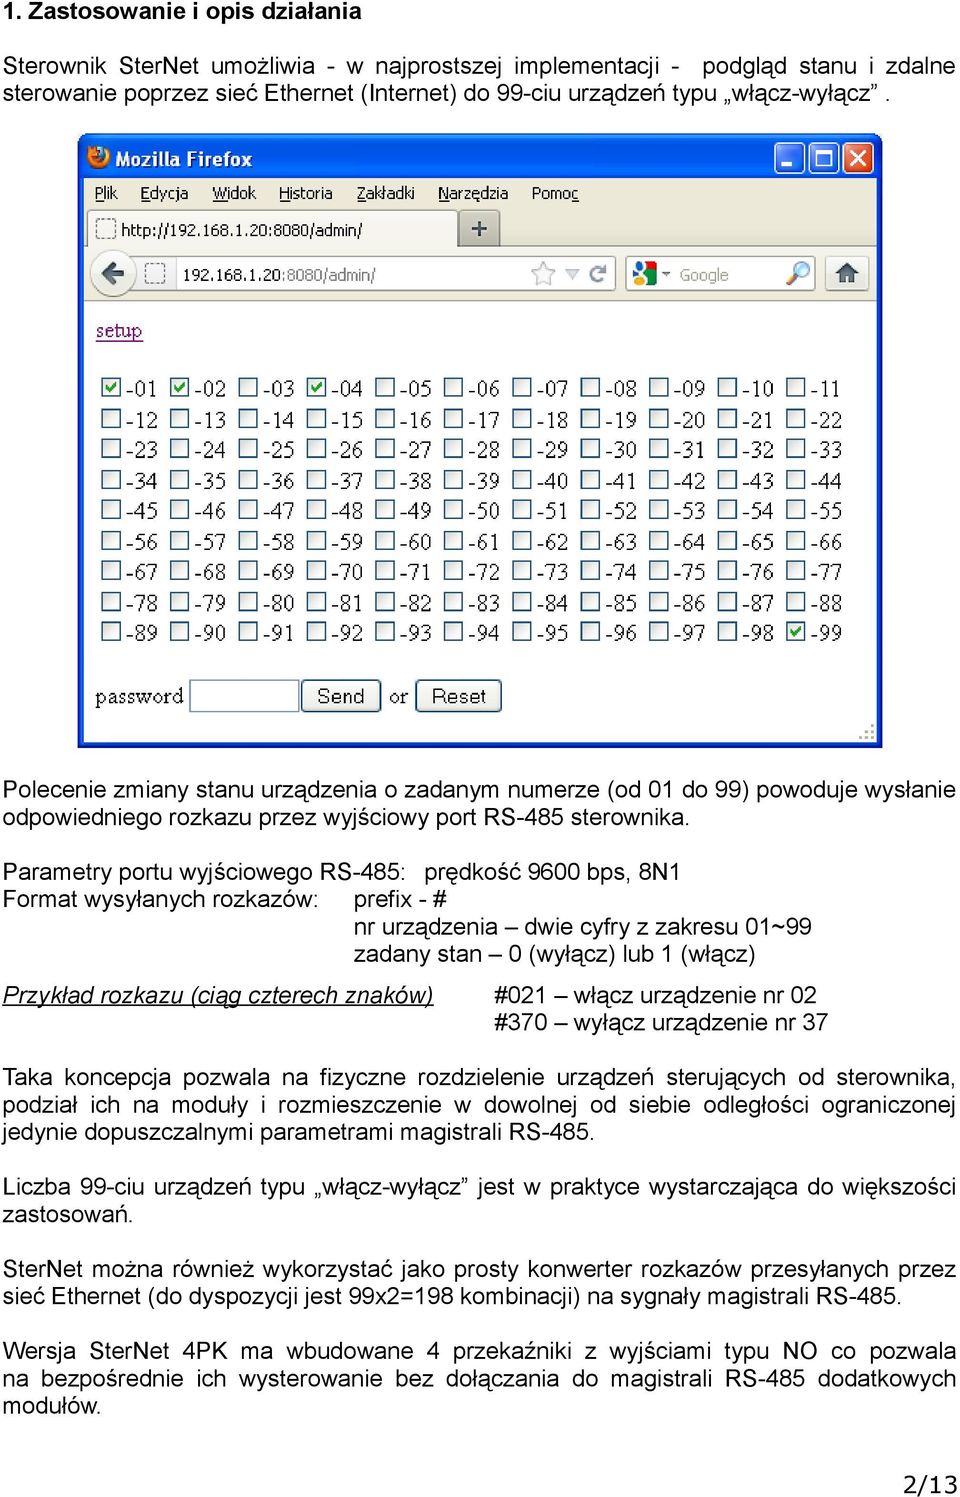 Parametry portu wyjściowego RS-485: prędkość 9600 bps, 8N1 Format wysyłanych rozkazów: prefix - # nr urządzenia dwie cyfry z zakresu 01~99 zadany stan 0 (wyłącz) lub 1 (włącz) Przykład rozkazu (ciąg